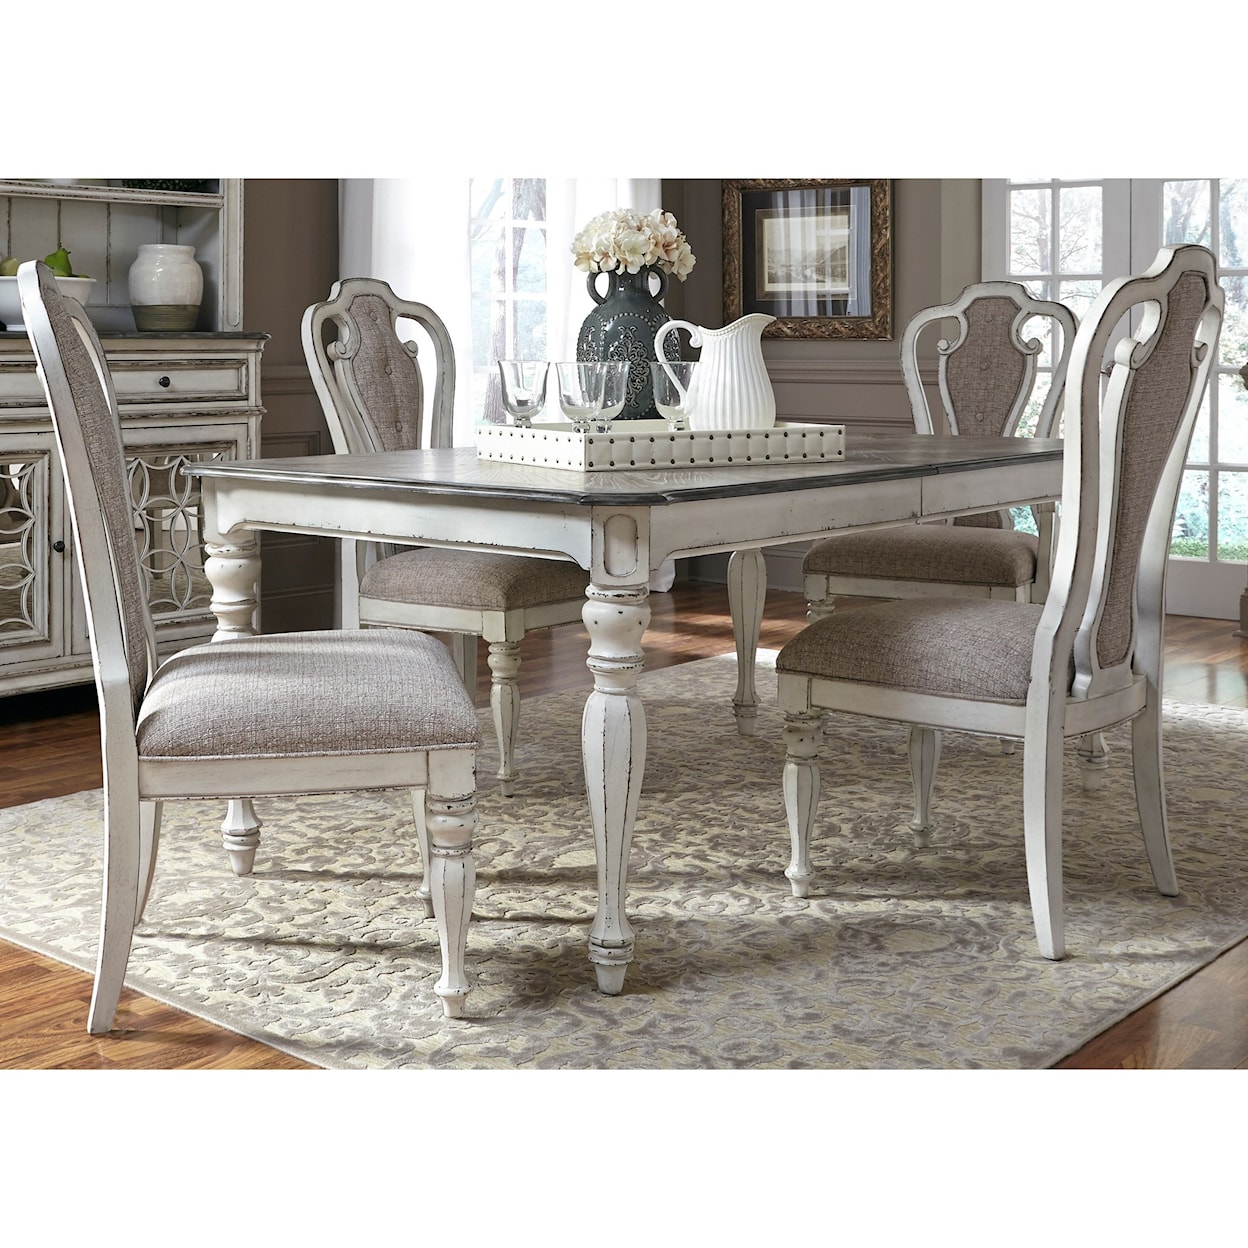 Liberty Furniture Magnolia Manor 5 Piece Rectangular Table Set